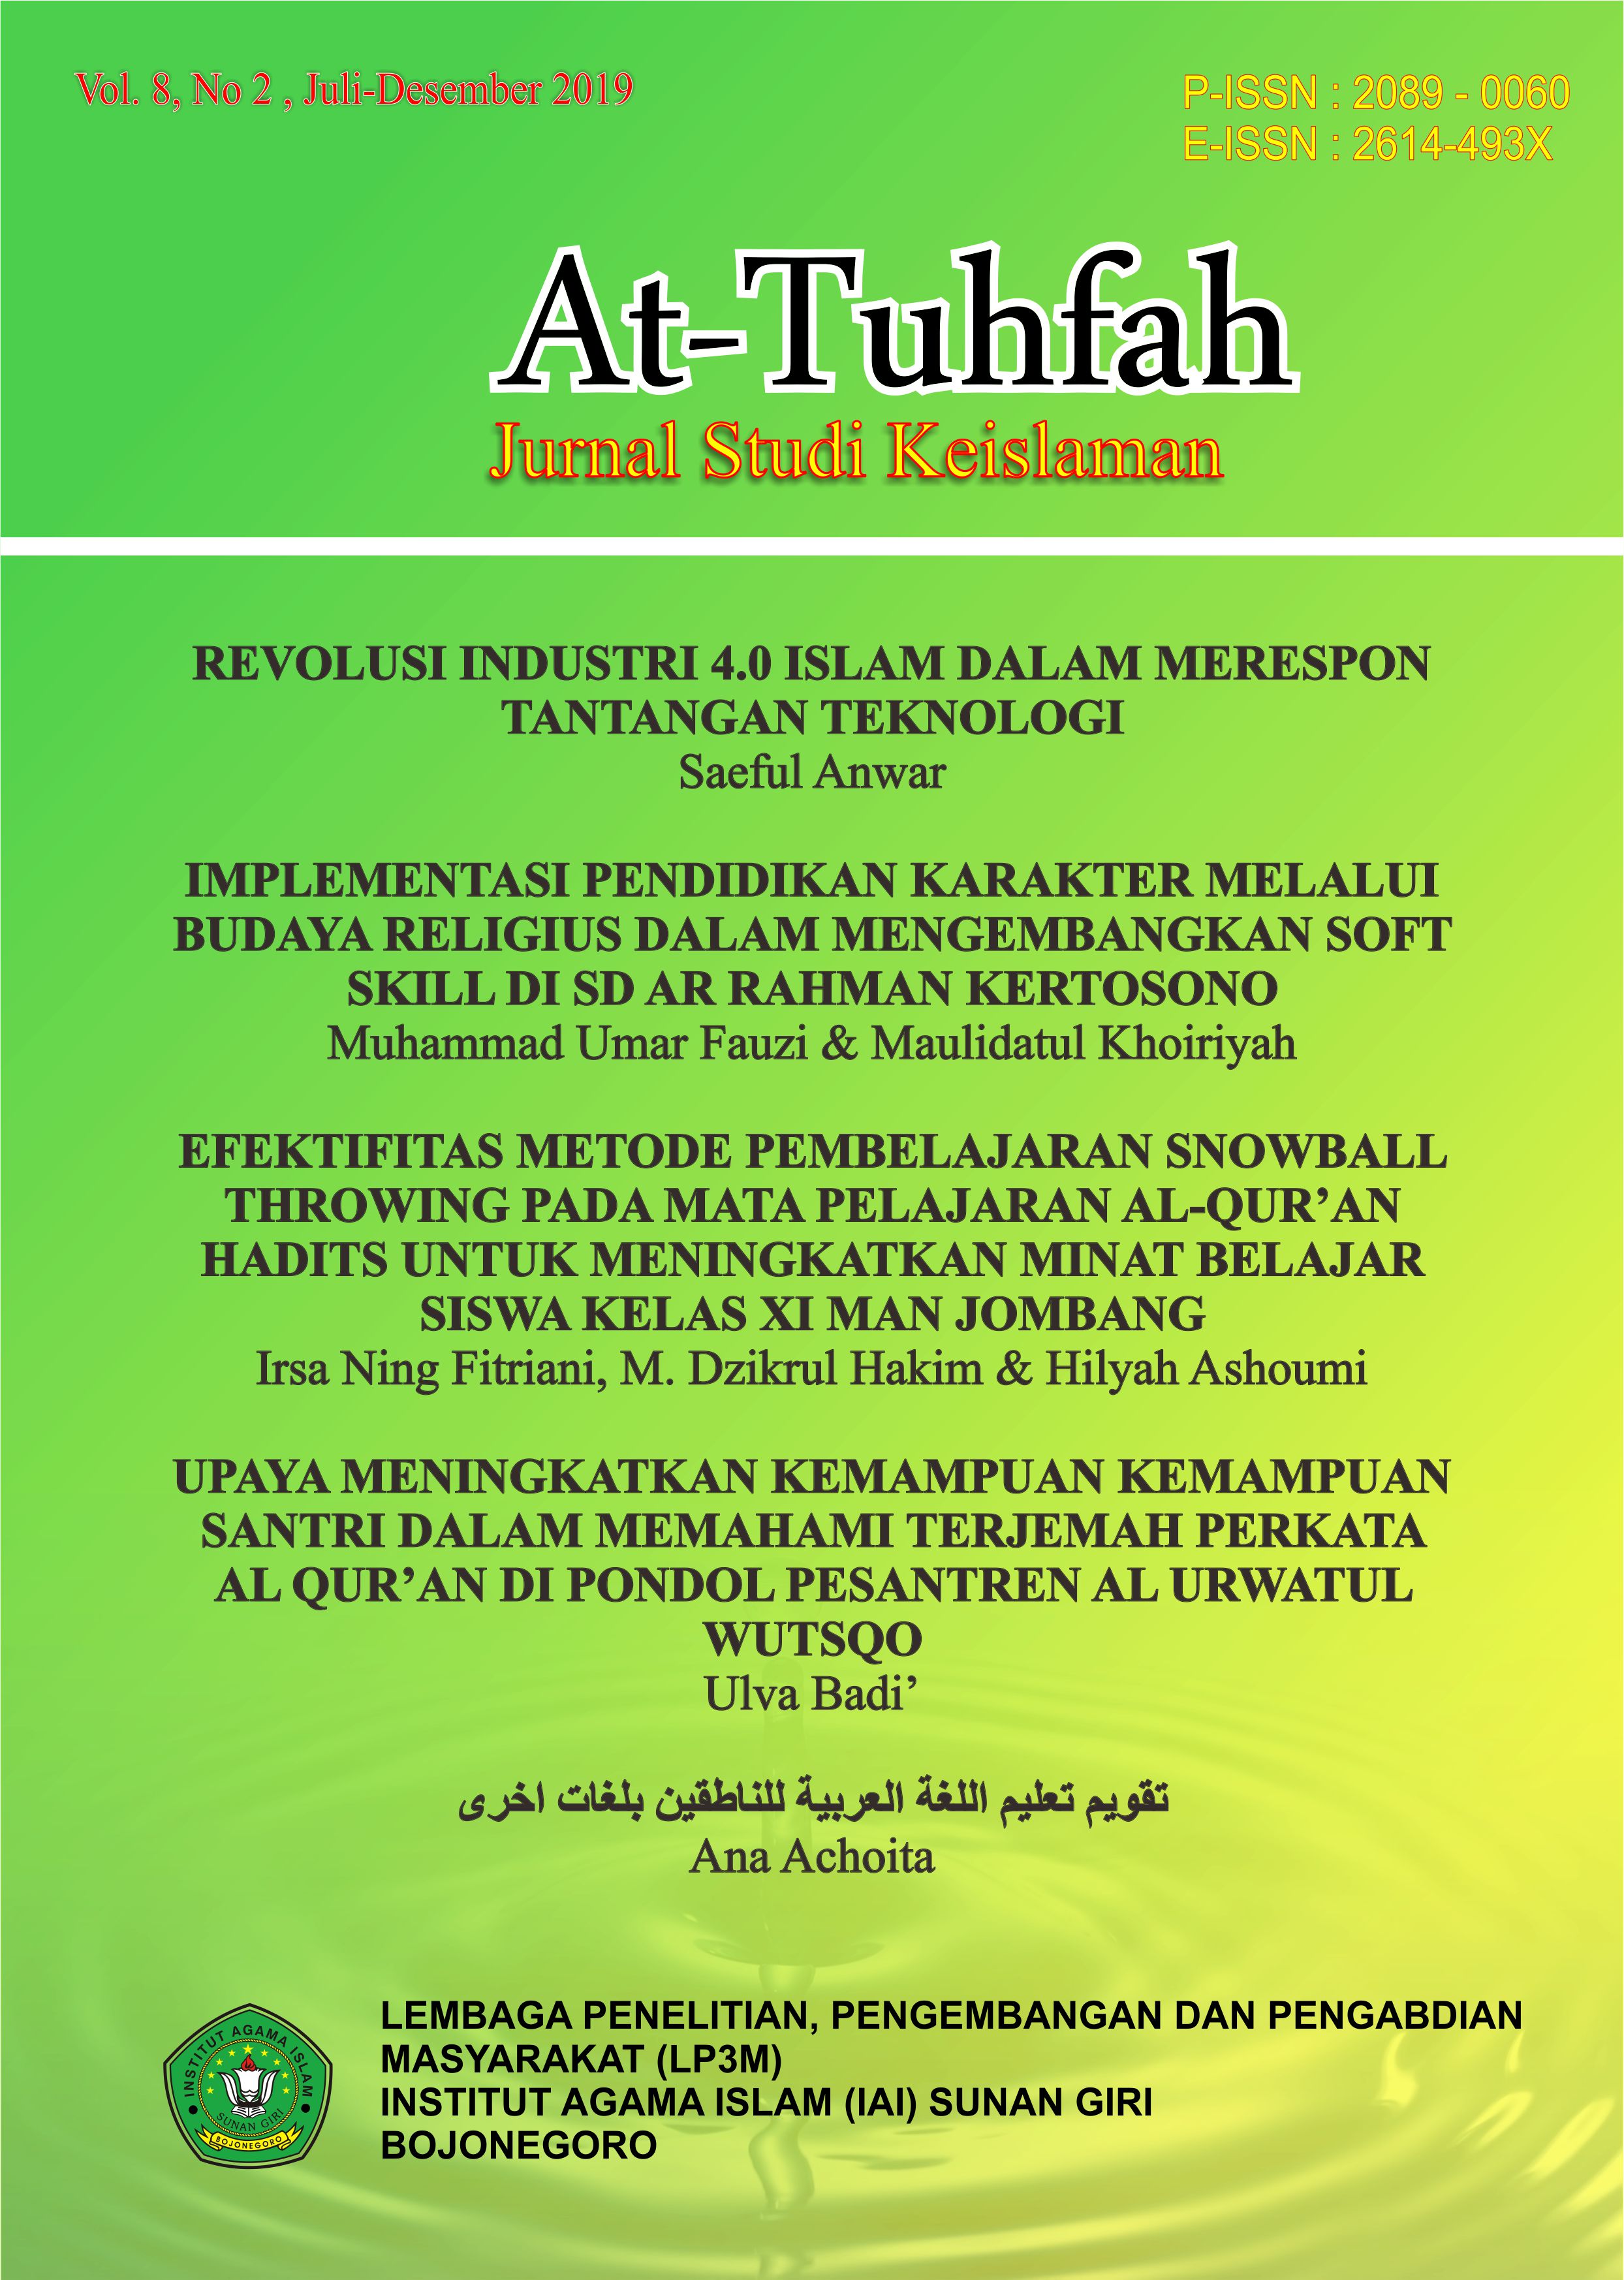 					View Vol. 8 No. 2 (2019): AT-TUHFAH: JURNAL STUDI KEISLAMAN 
				